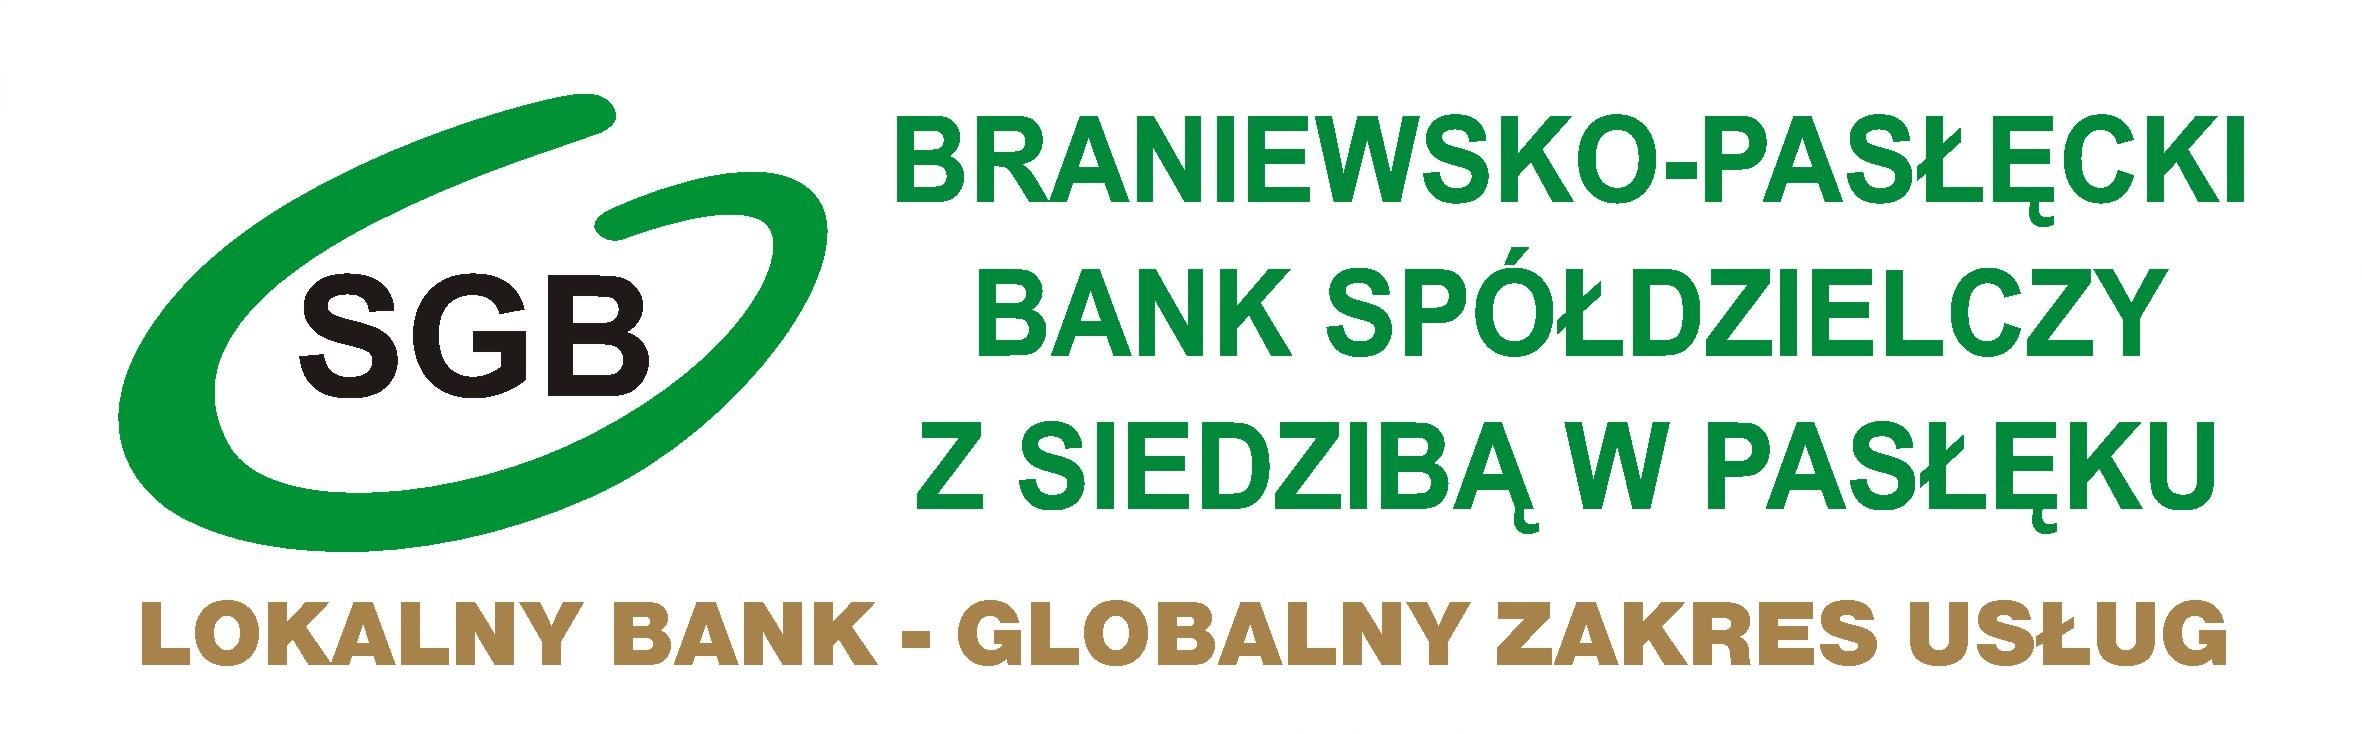 Polityka informacyjna - Braniewsko-Pasłęcki Bank Spółdzielczy z siedzibą w Pasłęku